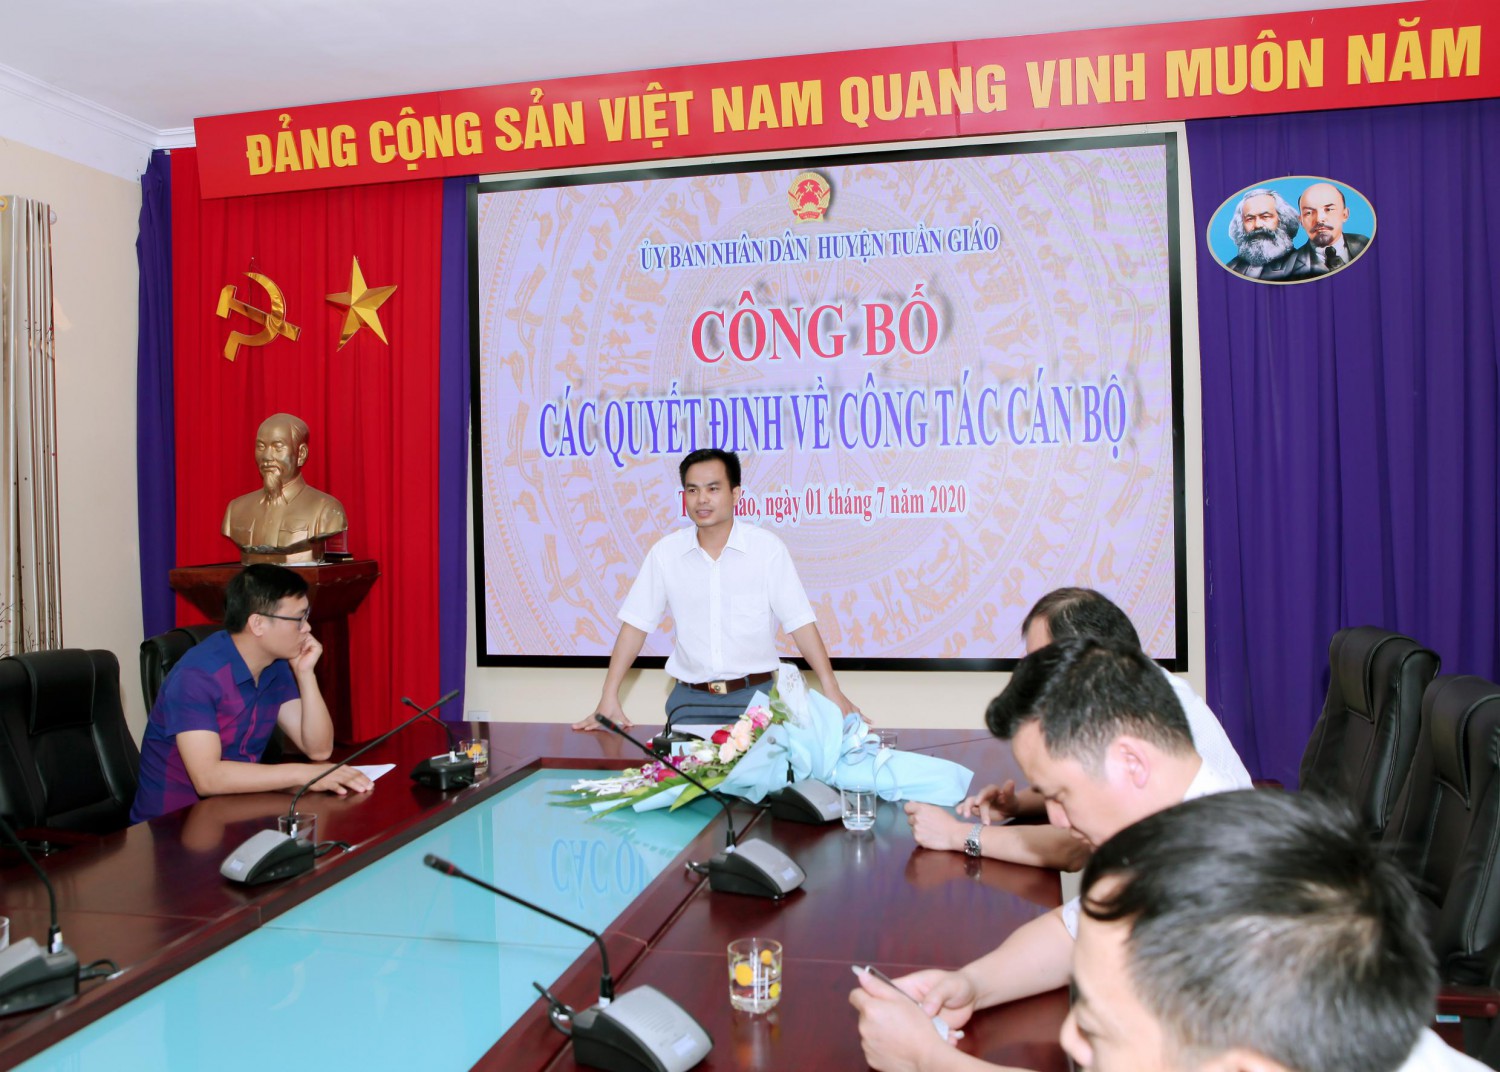 Đ/c Nguyễn Văn Bách - Tân Phó Chánh Văn phòng HĐND - UBND huyện Tuần Giáo phát biểu nhận nhiệm vụ